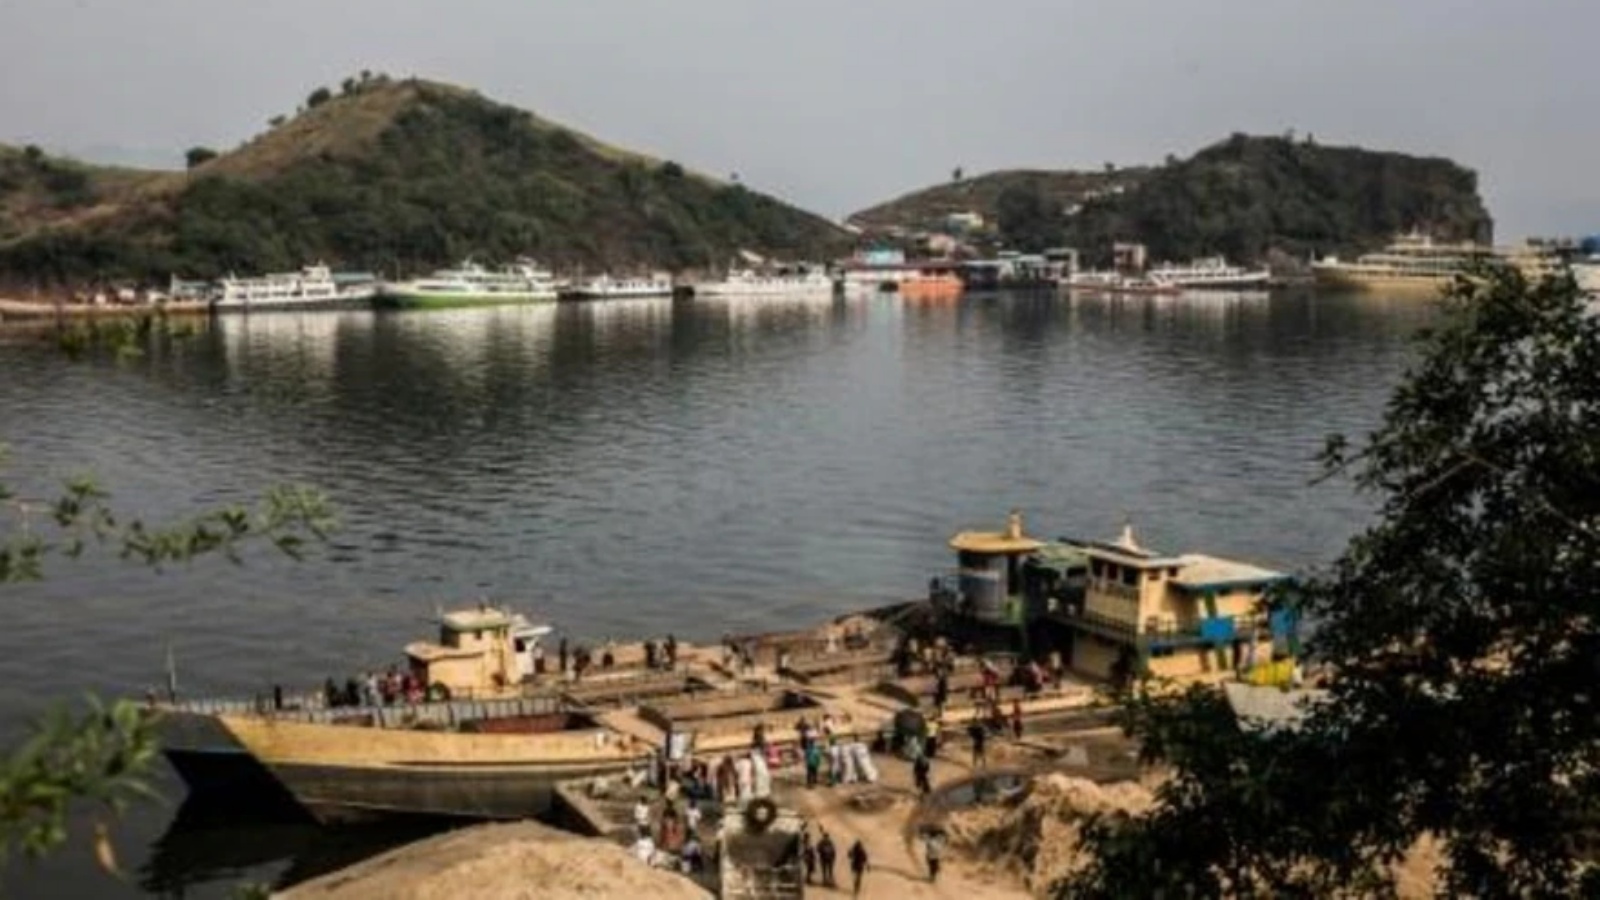  مرفأ غوما على ضفاف بحيرة كيفو في الأول من أغسطس 2019 